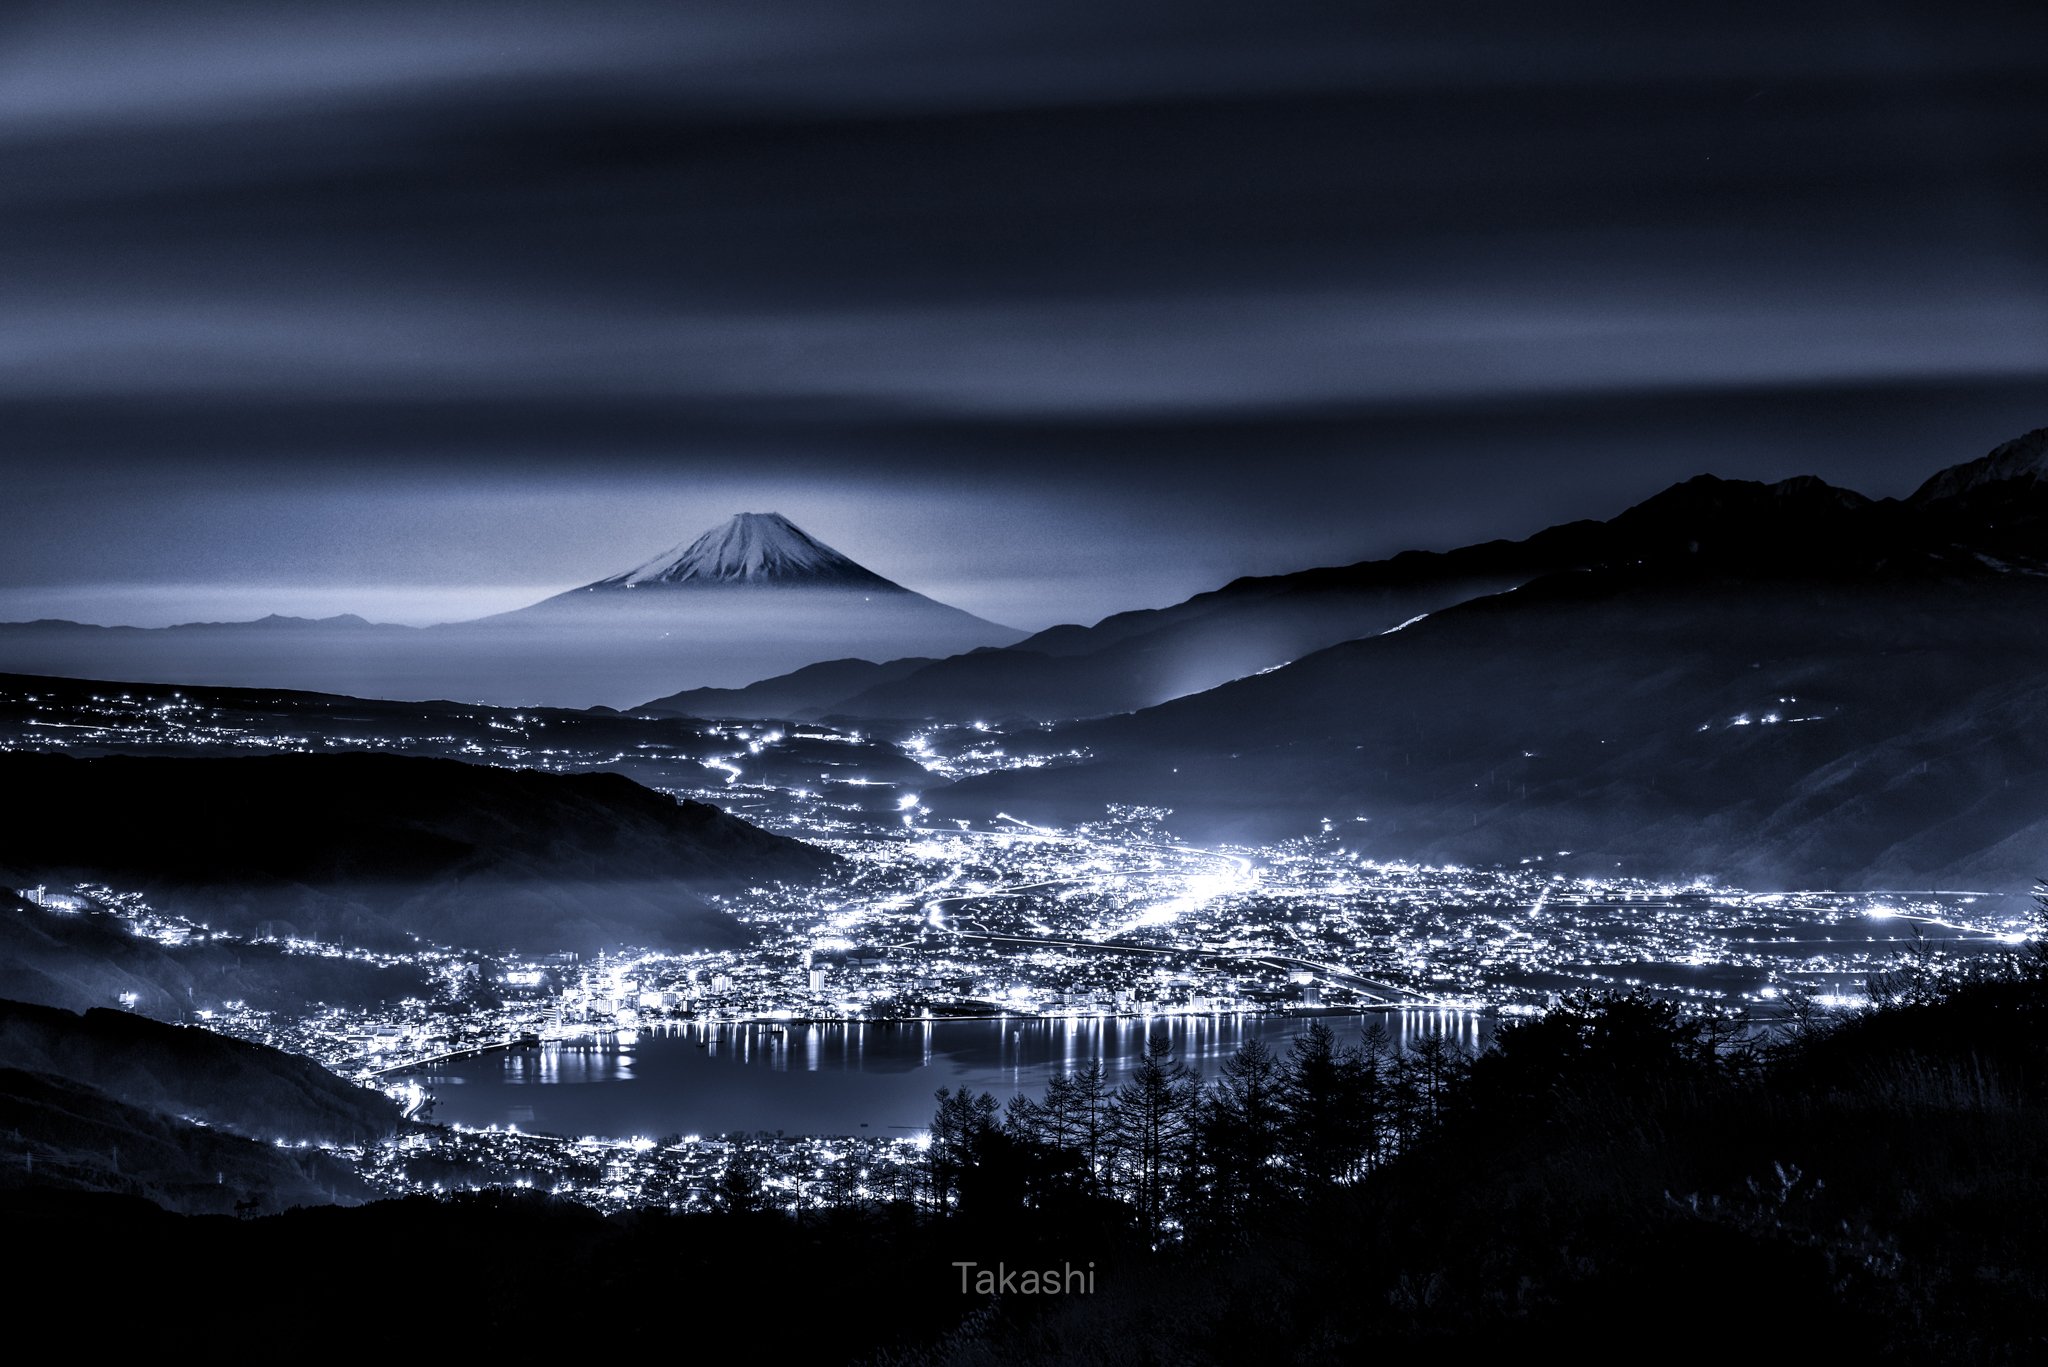 fuji,mountain,Japan,night,lights,clouds,lake,water,, Takashi